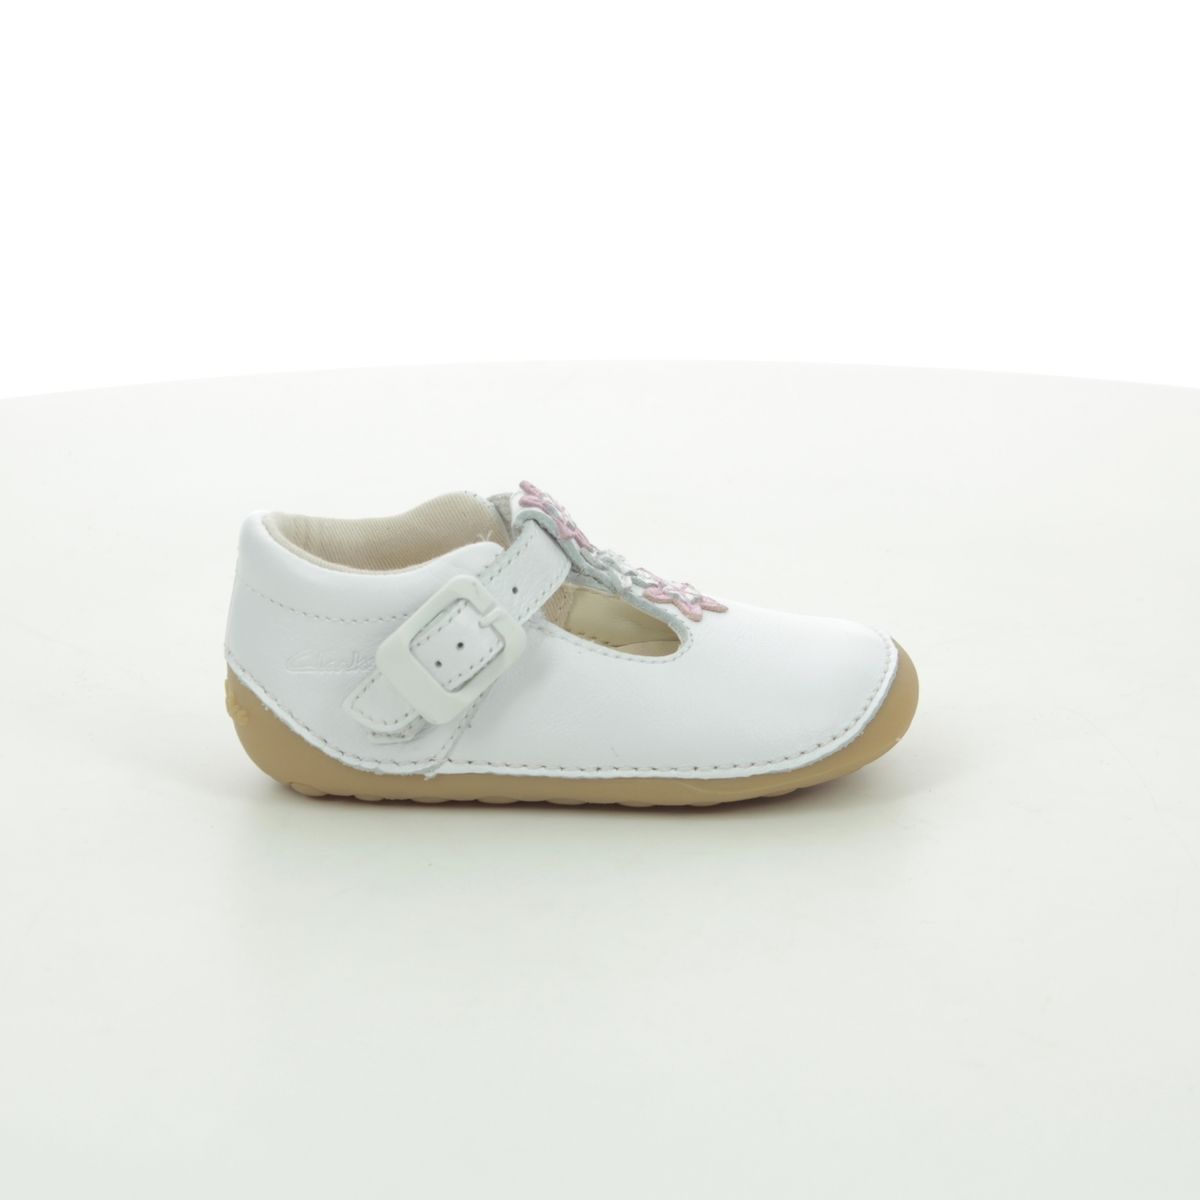 Clarks Kids Shoes-Comet Gem Toddler-5 G-white